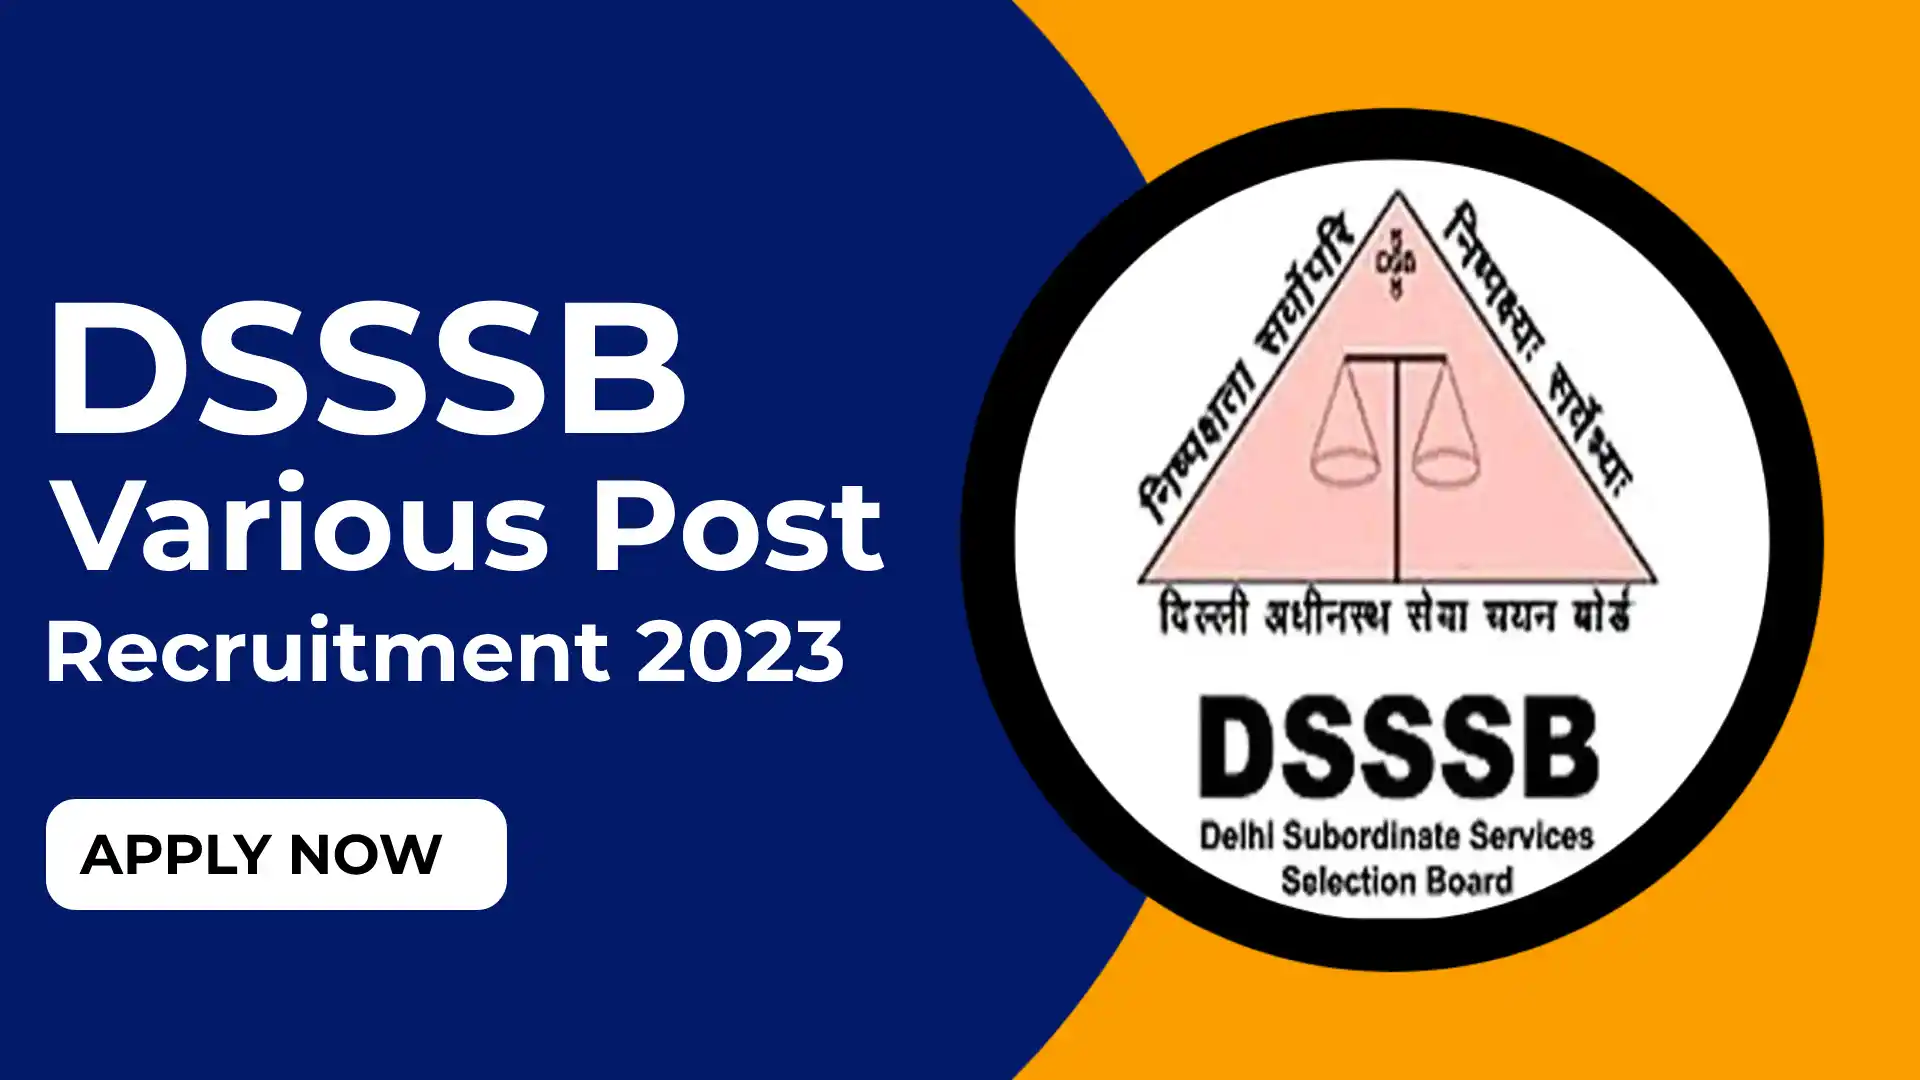 DSSSB Various Post Recruitment 2023